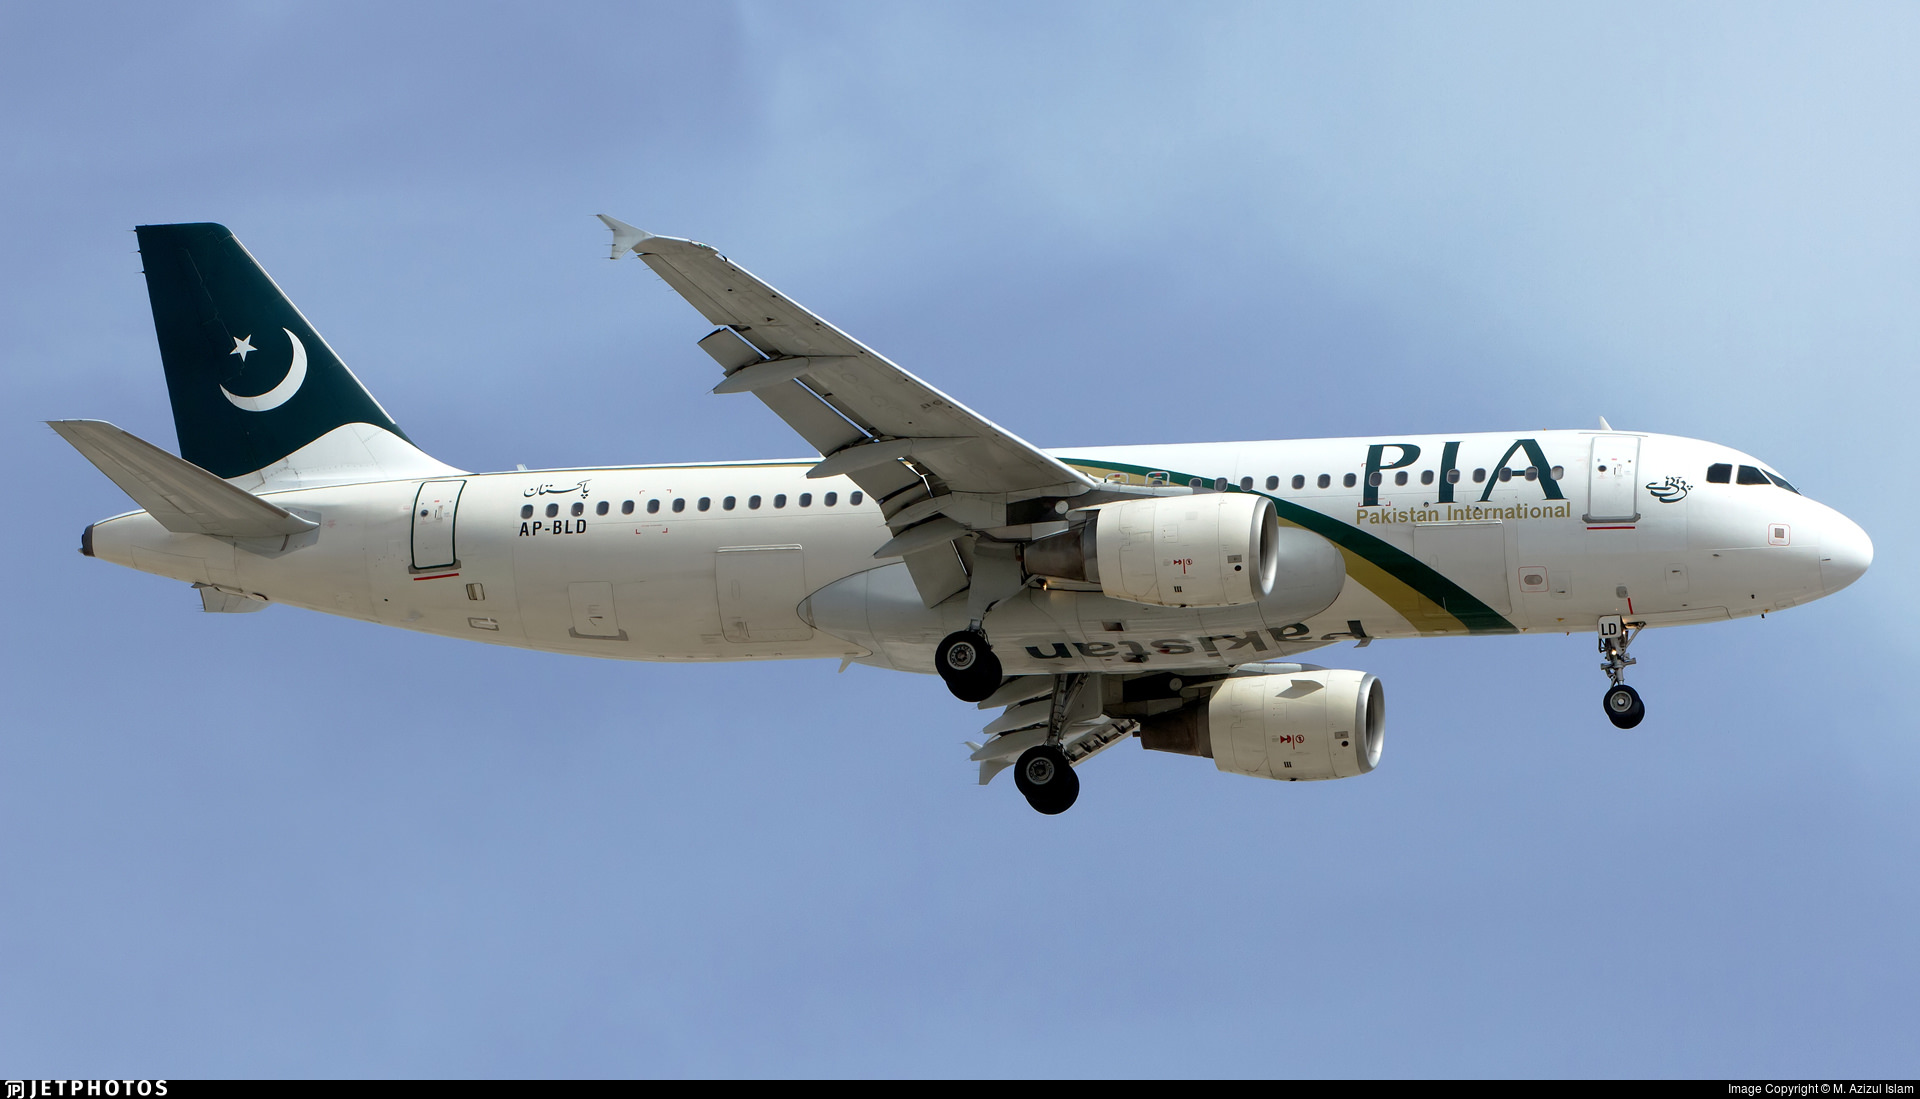 Νέες εικόνες-σοκ από την συντριβή του Airbus A320 στο Καράτσι: Έπεφτε χωρίς να έχει ισχύ στους κινητήρες